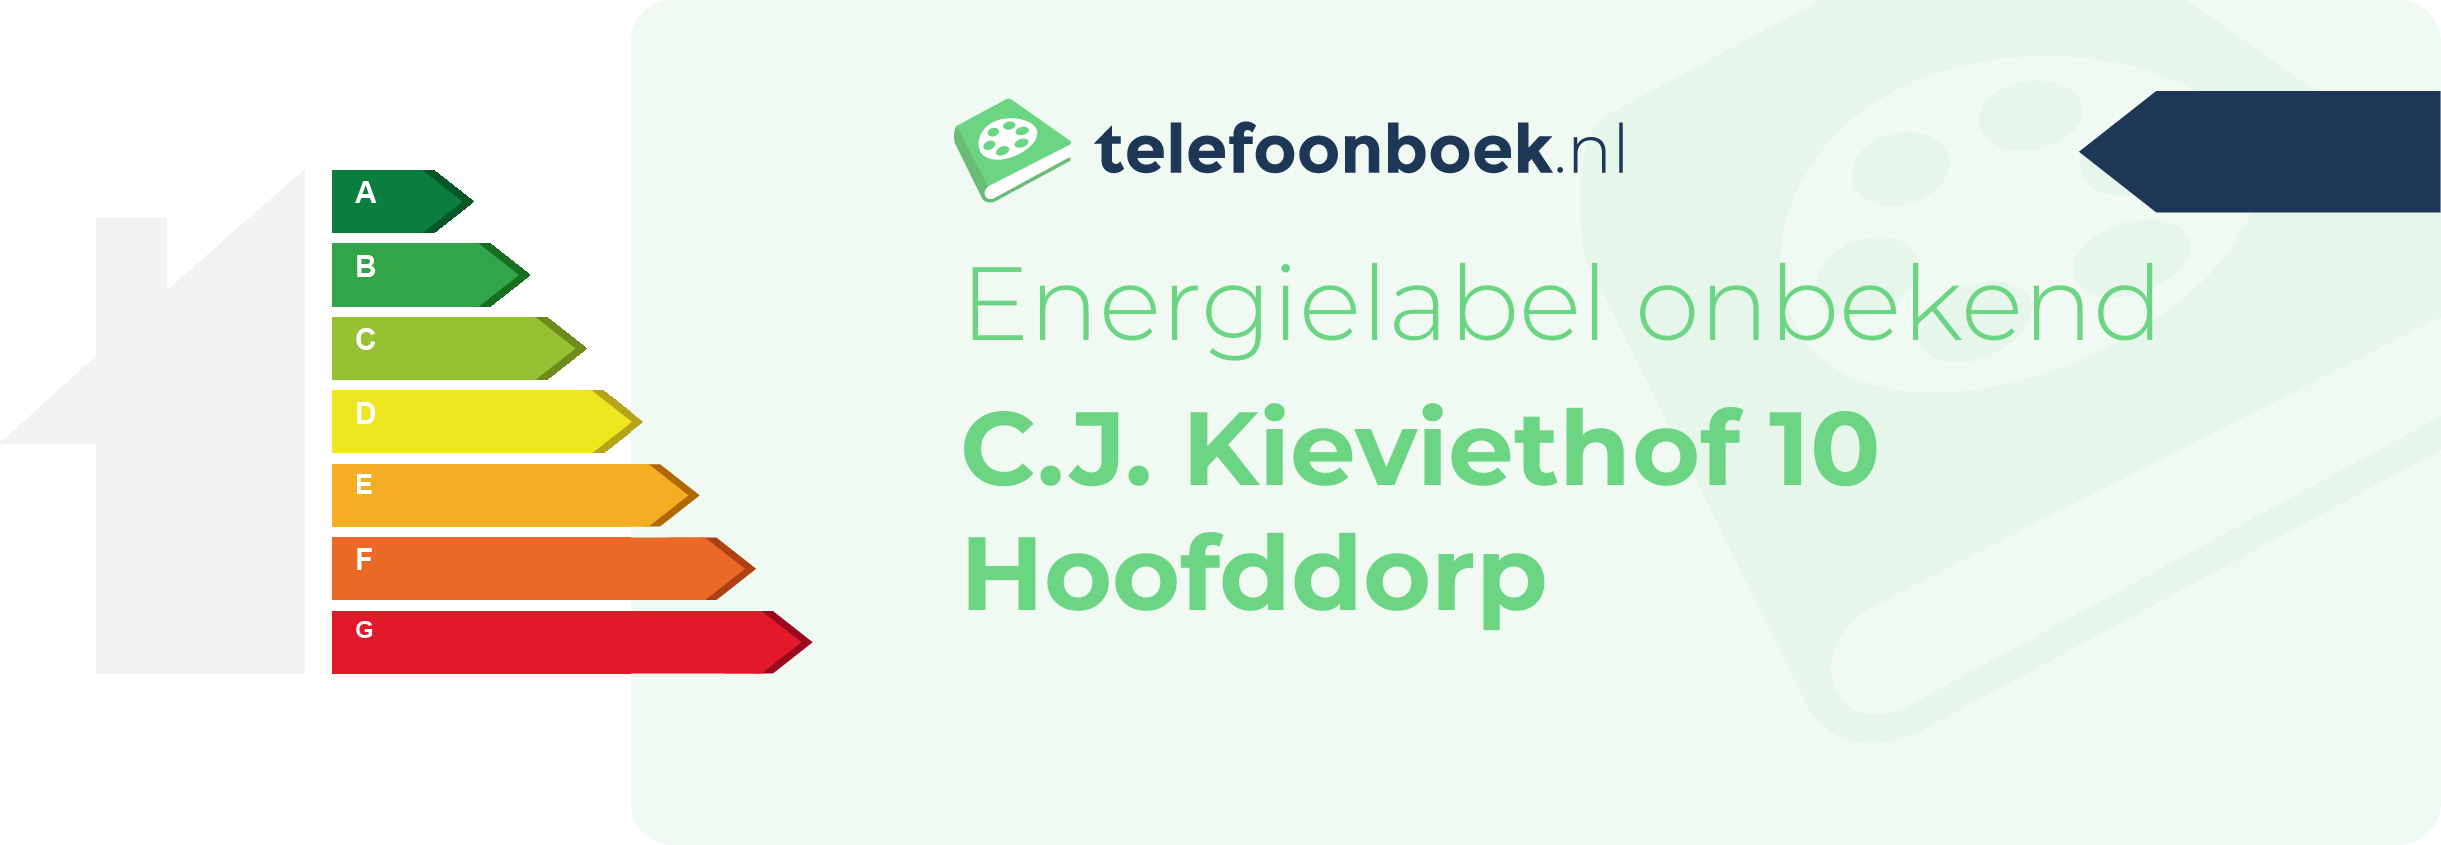 Energielabel C.J. Kieviethof 10 Hoofddorp